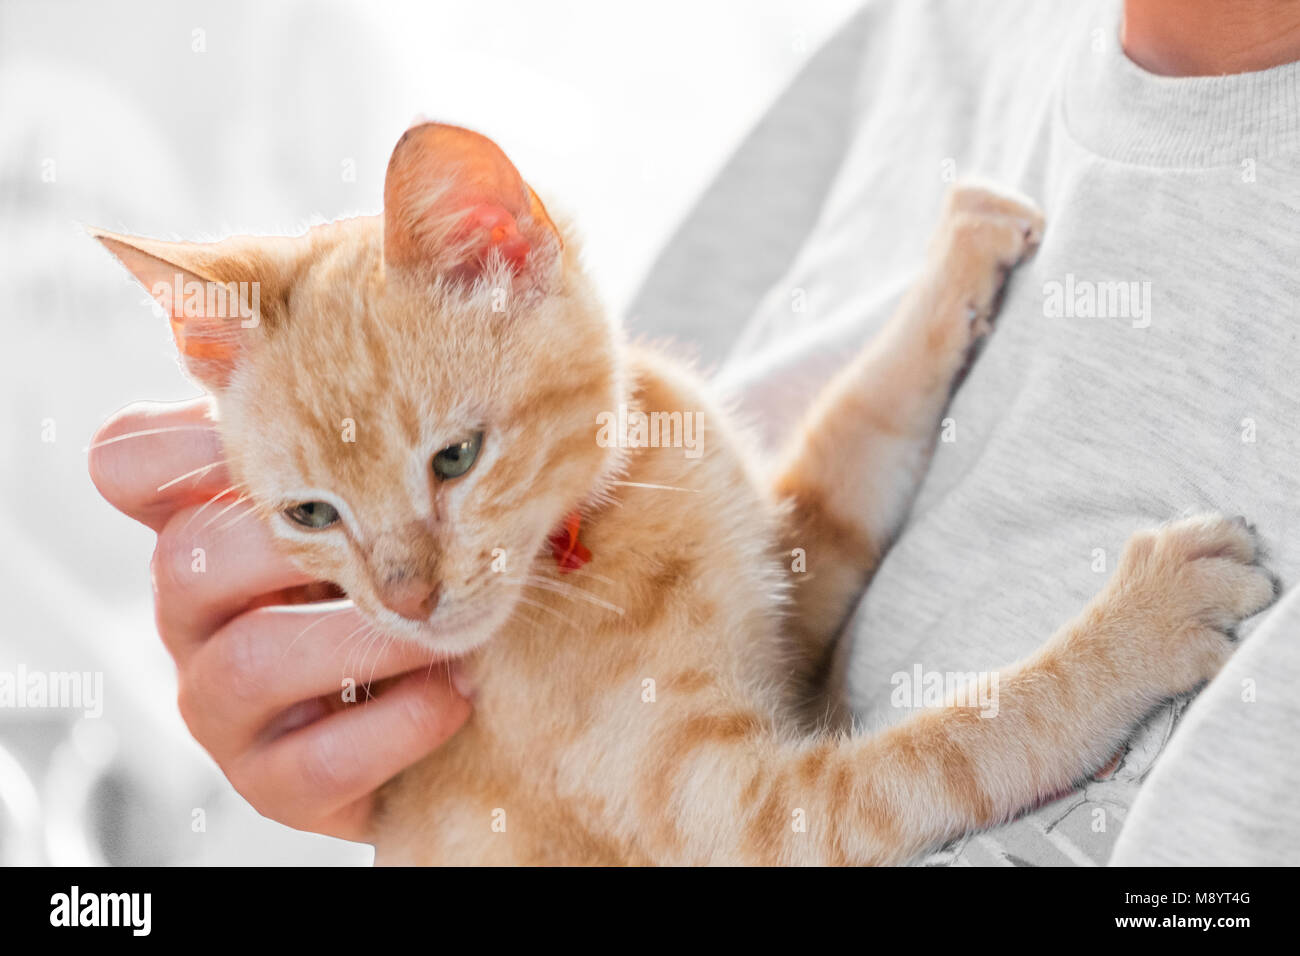 Holding niedliche rote Katze in den Armen - streicheln Kitty - Stockfoto